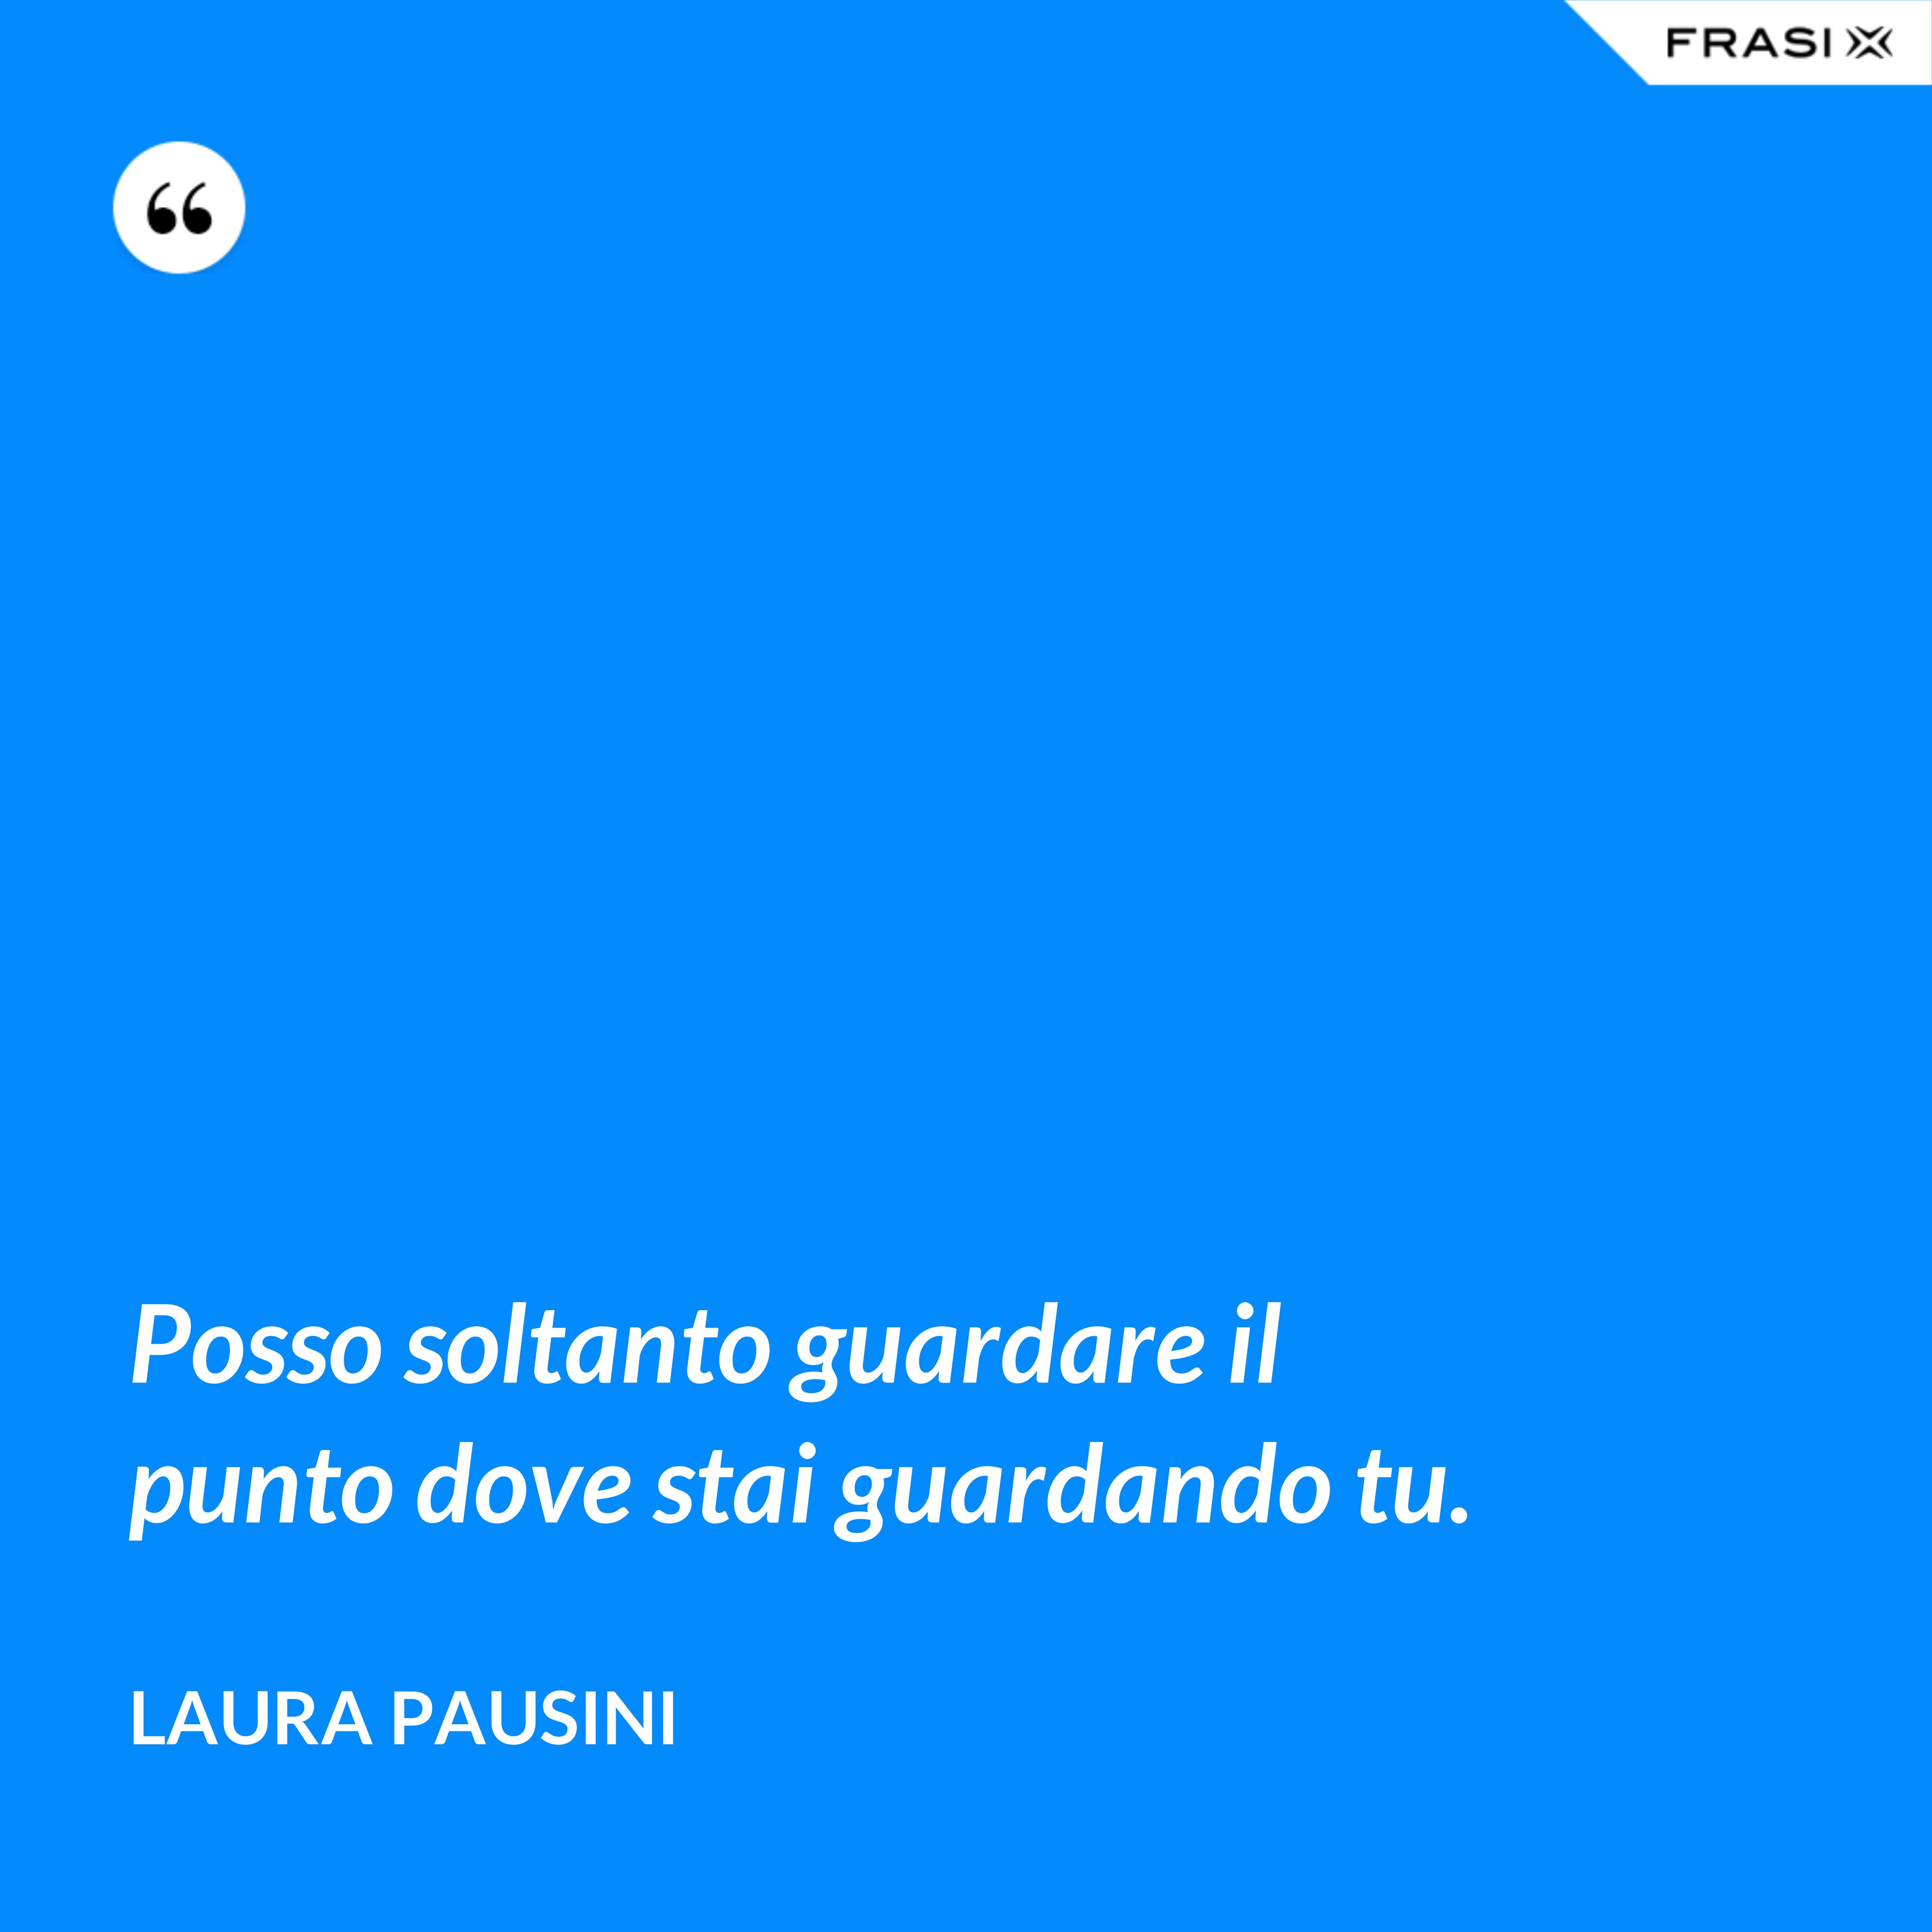 Posso soltanto guardare il punto dove stai guardando tu. - Laura Pausini